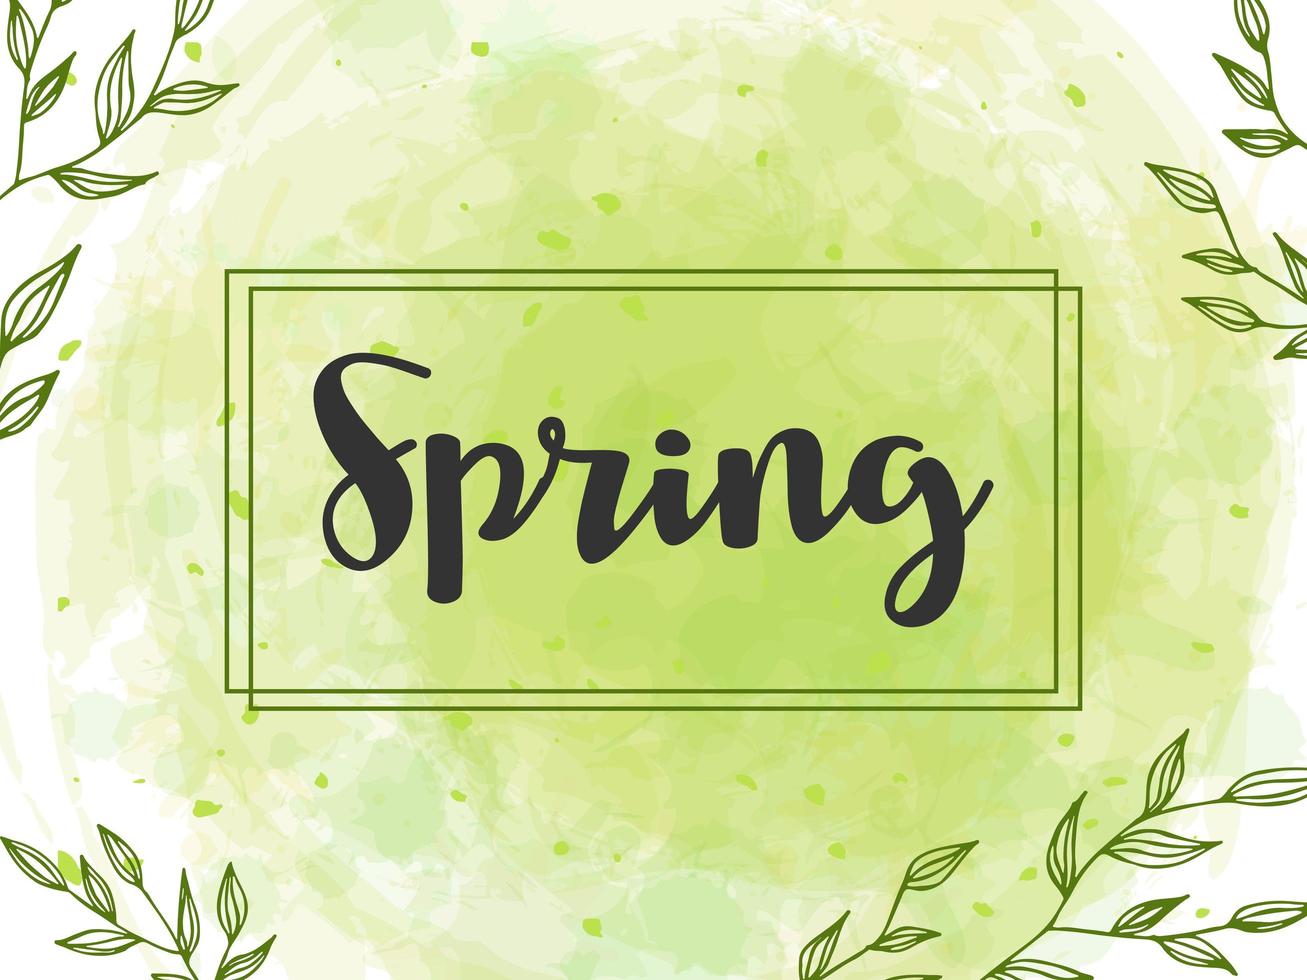 letras de primavera. ilustração vetorial com textura em um fundo branco. um quadro de galhos verdes e folhas de fundo em aquarela. vetor